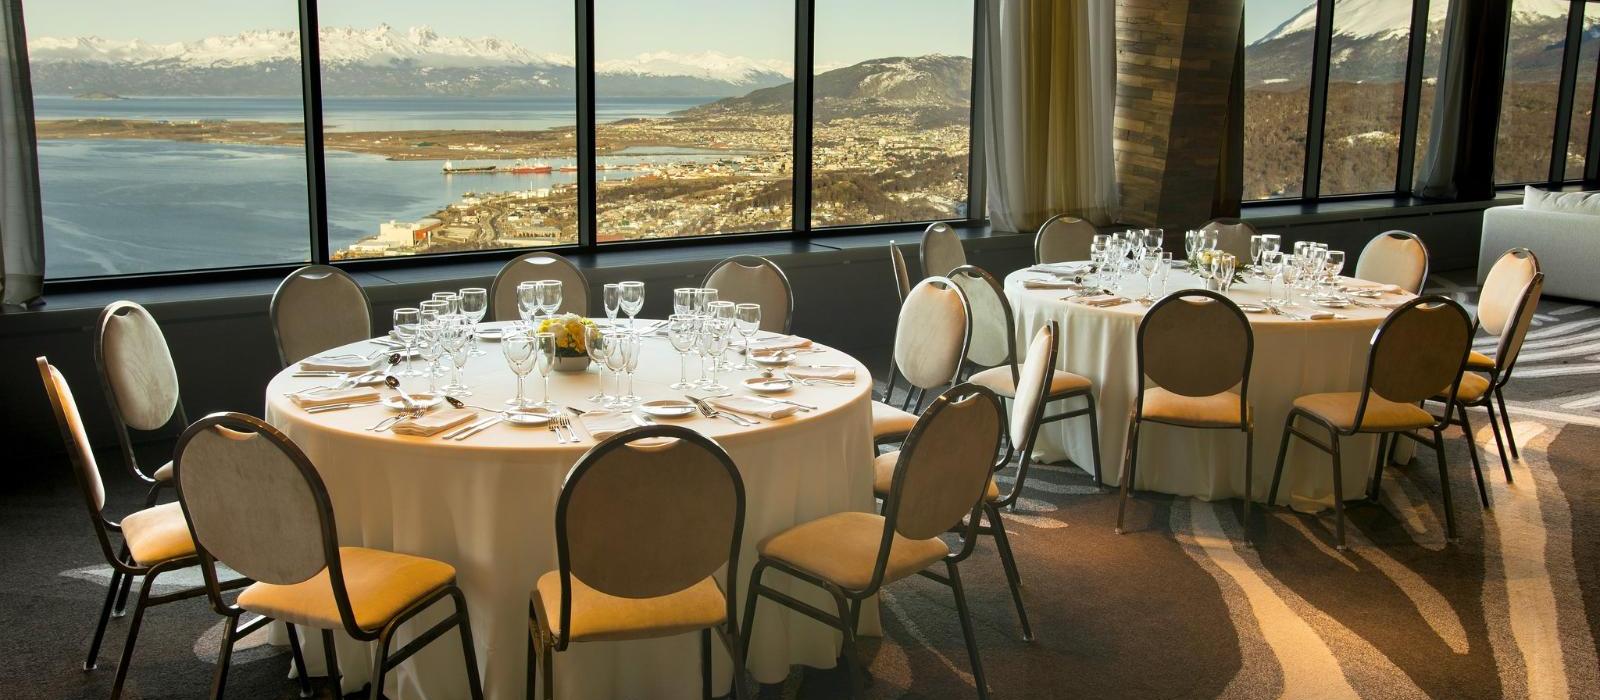 乌斯怀亚阿拉库尔水疗度假酒店(Arakur Ushuaia Resort & Spa) 图片  www.lhw.cn